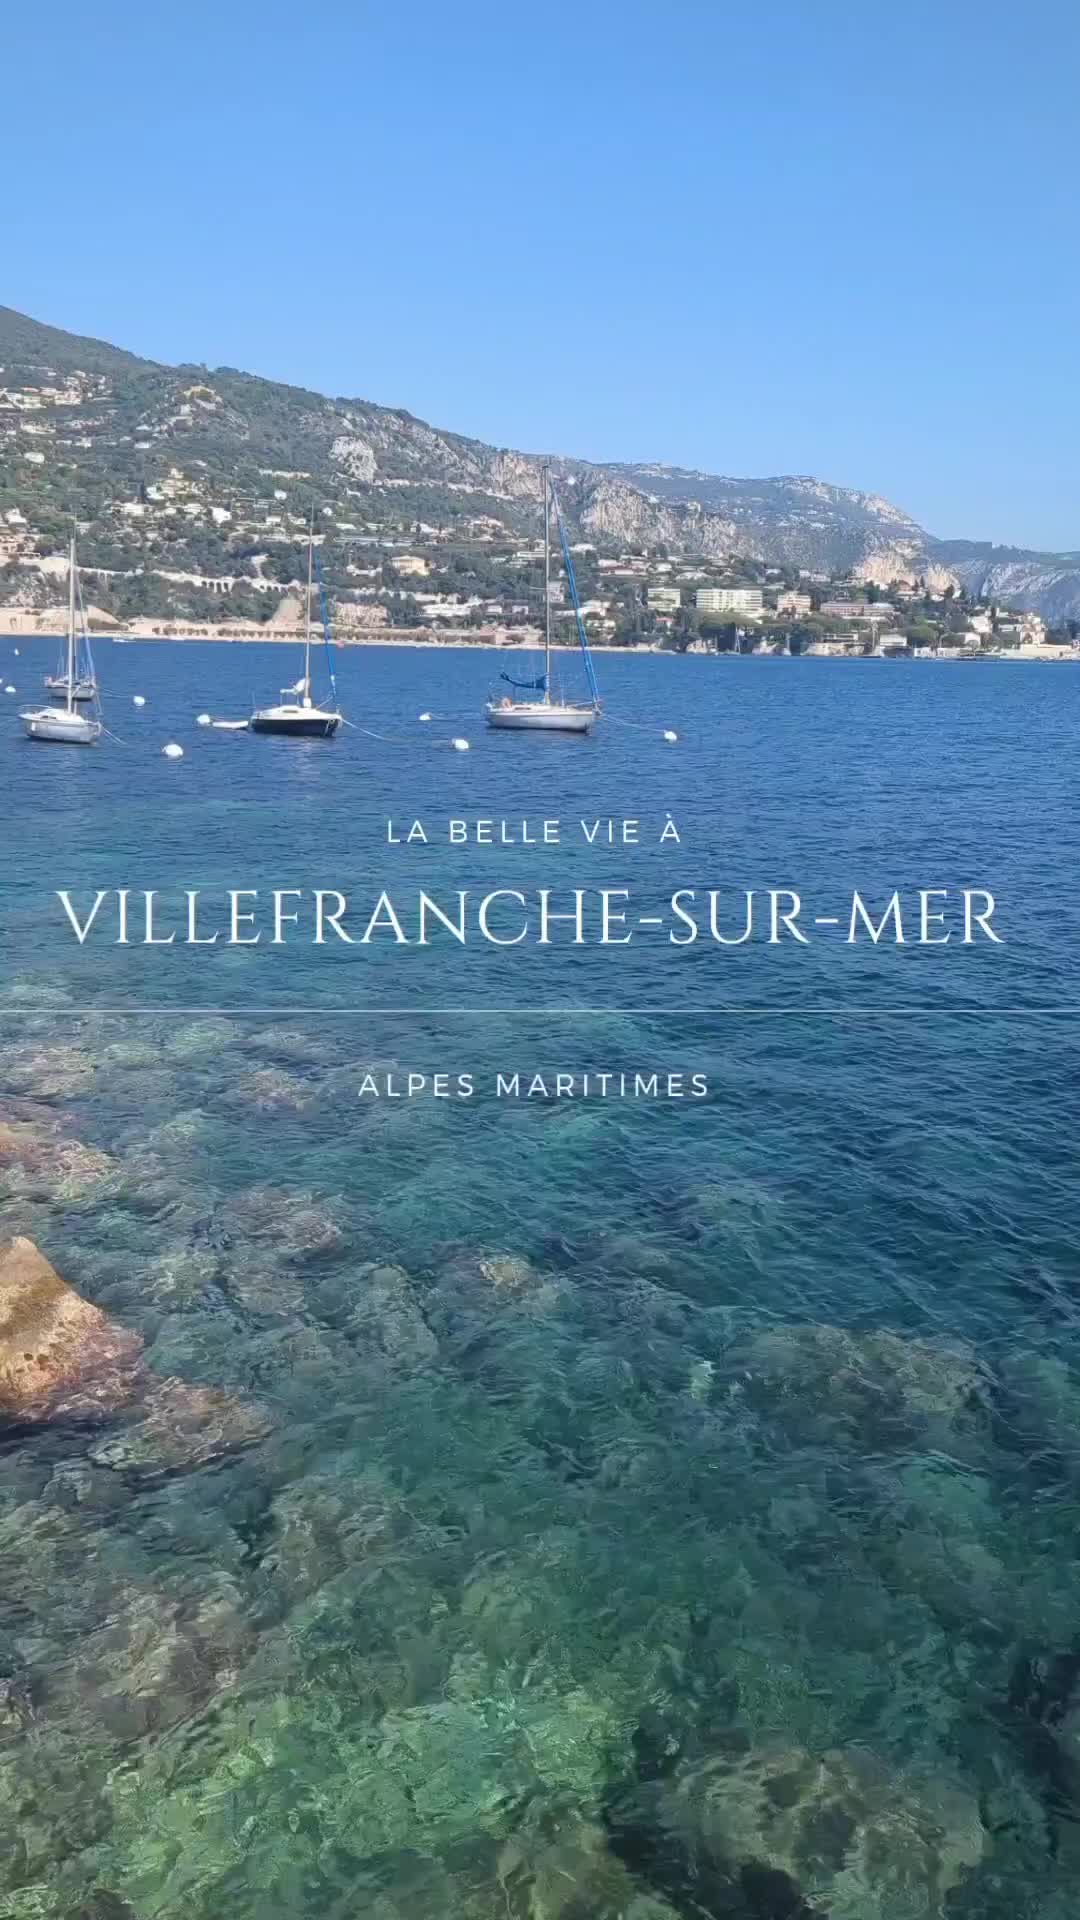 Discover Villefranche-sur-Mer: Jewel of the Côte d'Azur